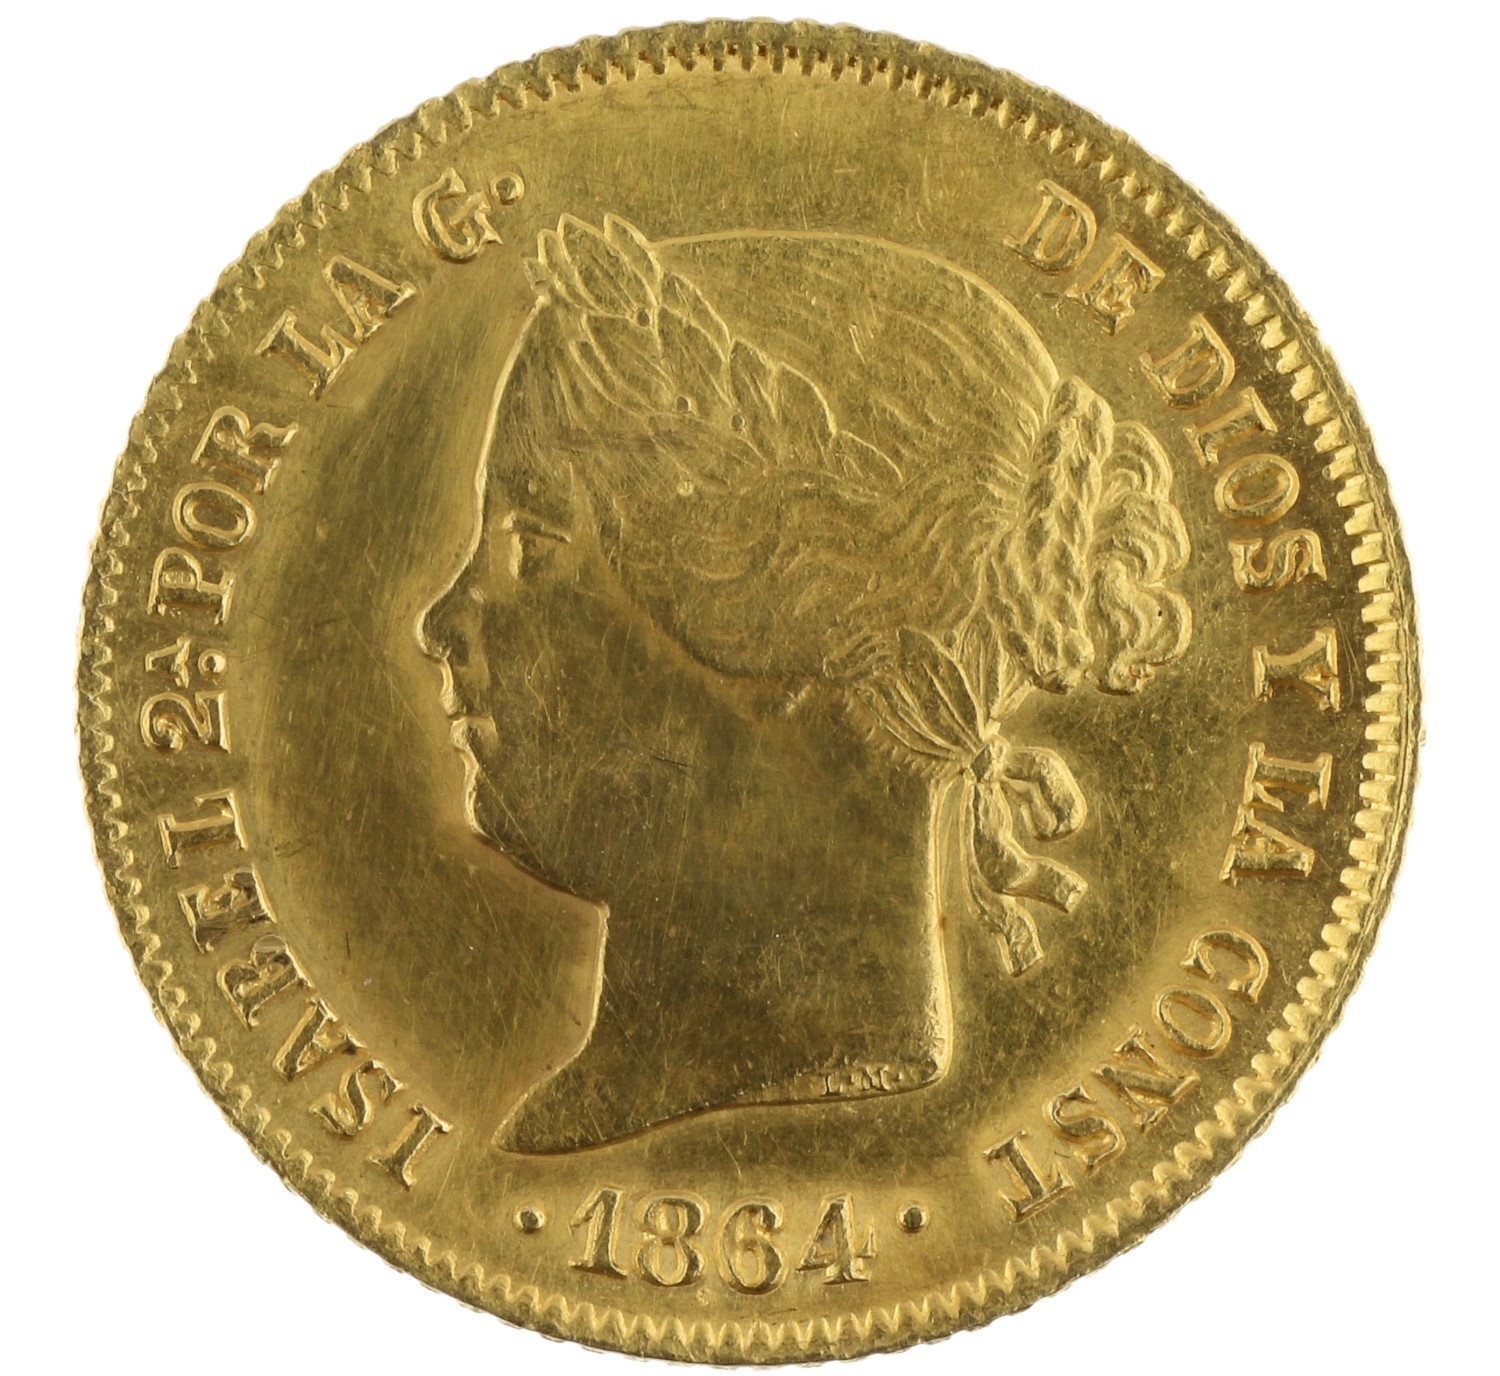 4 Pesos - Philippines - 1864